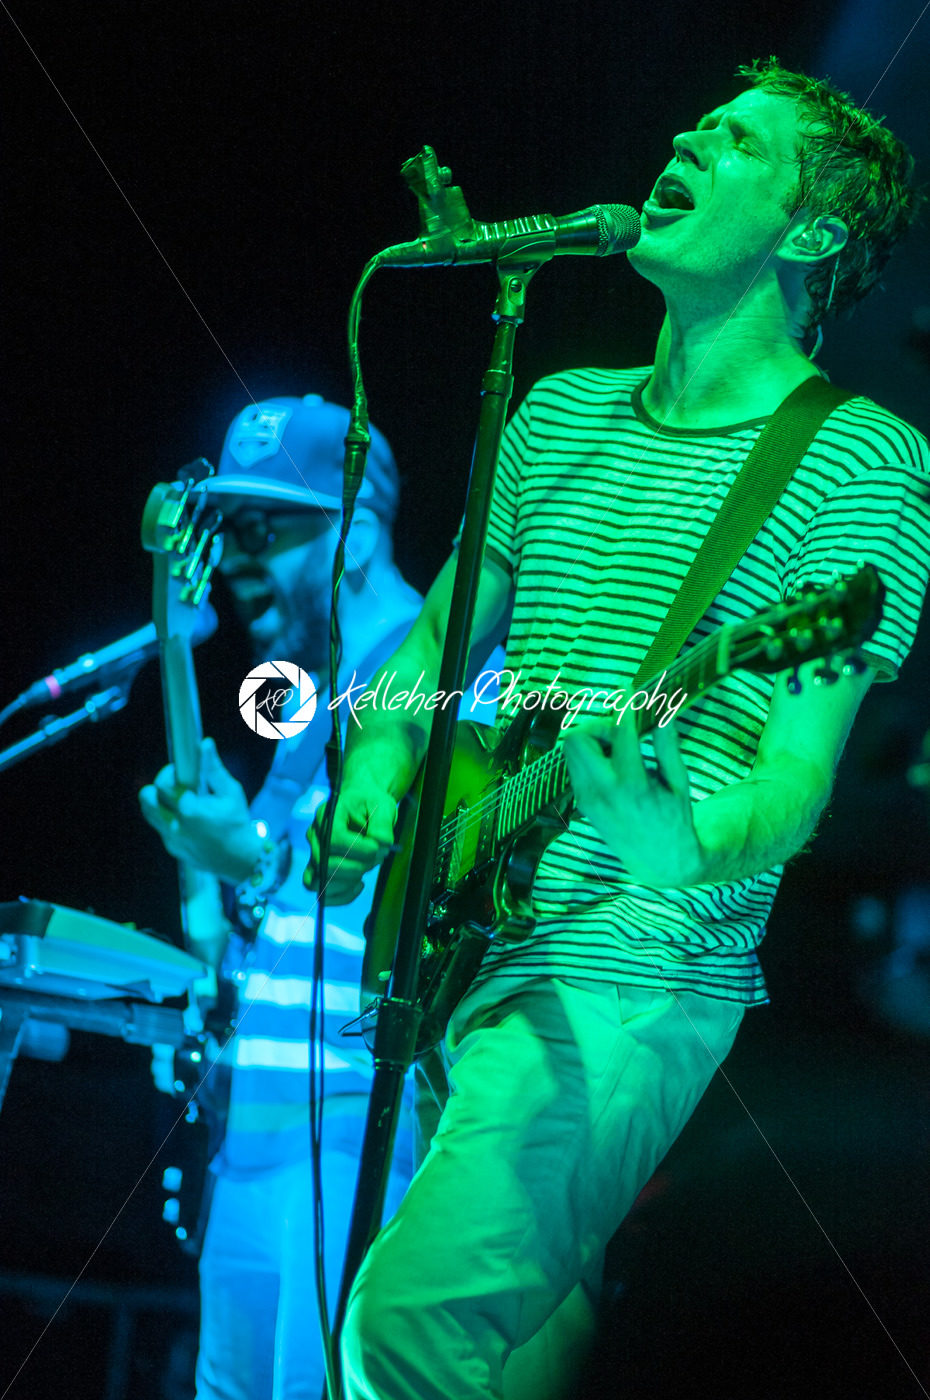 PHILADELPHIA, PA – SEPTEMBER 20: Band OK Go performs in Philadelphia on September 20, 2014. - Kelleher Photography Store